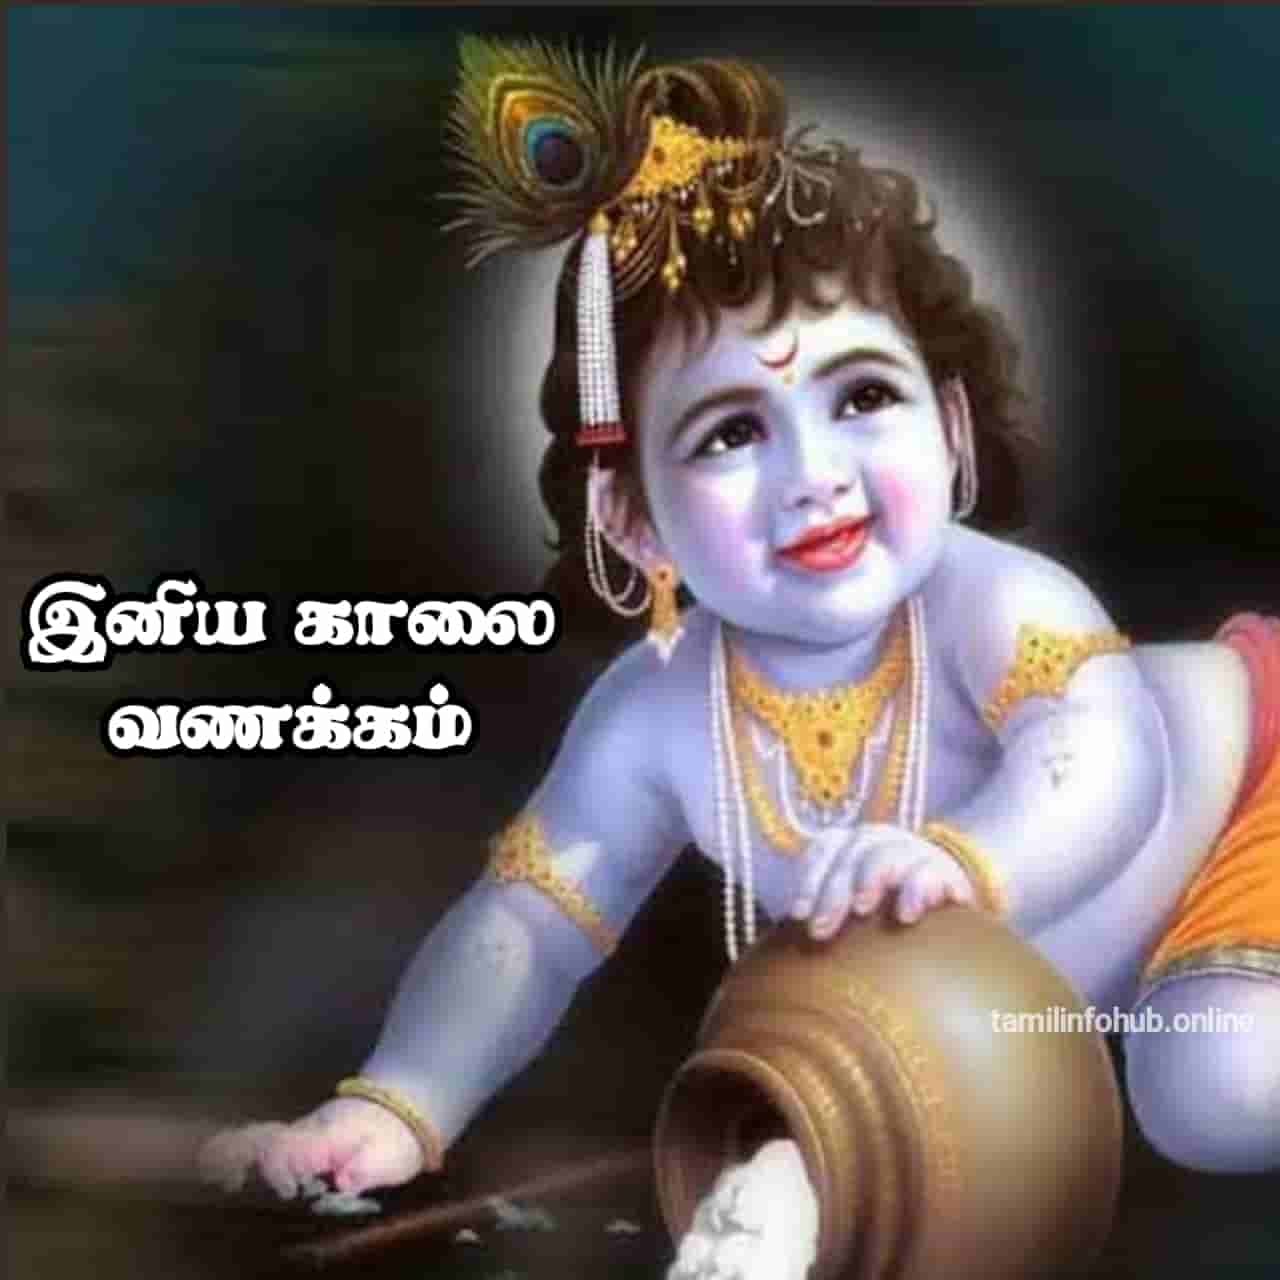 krishna good morning quotes tamil